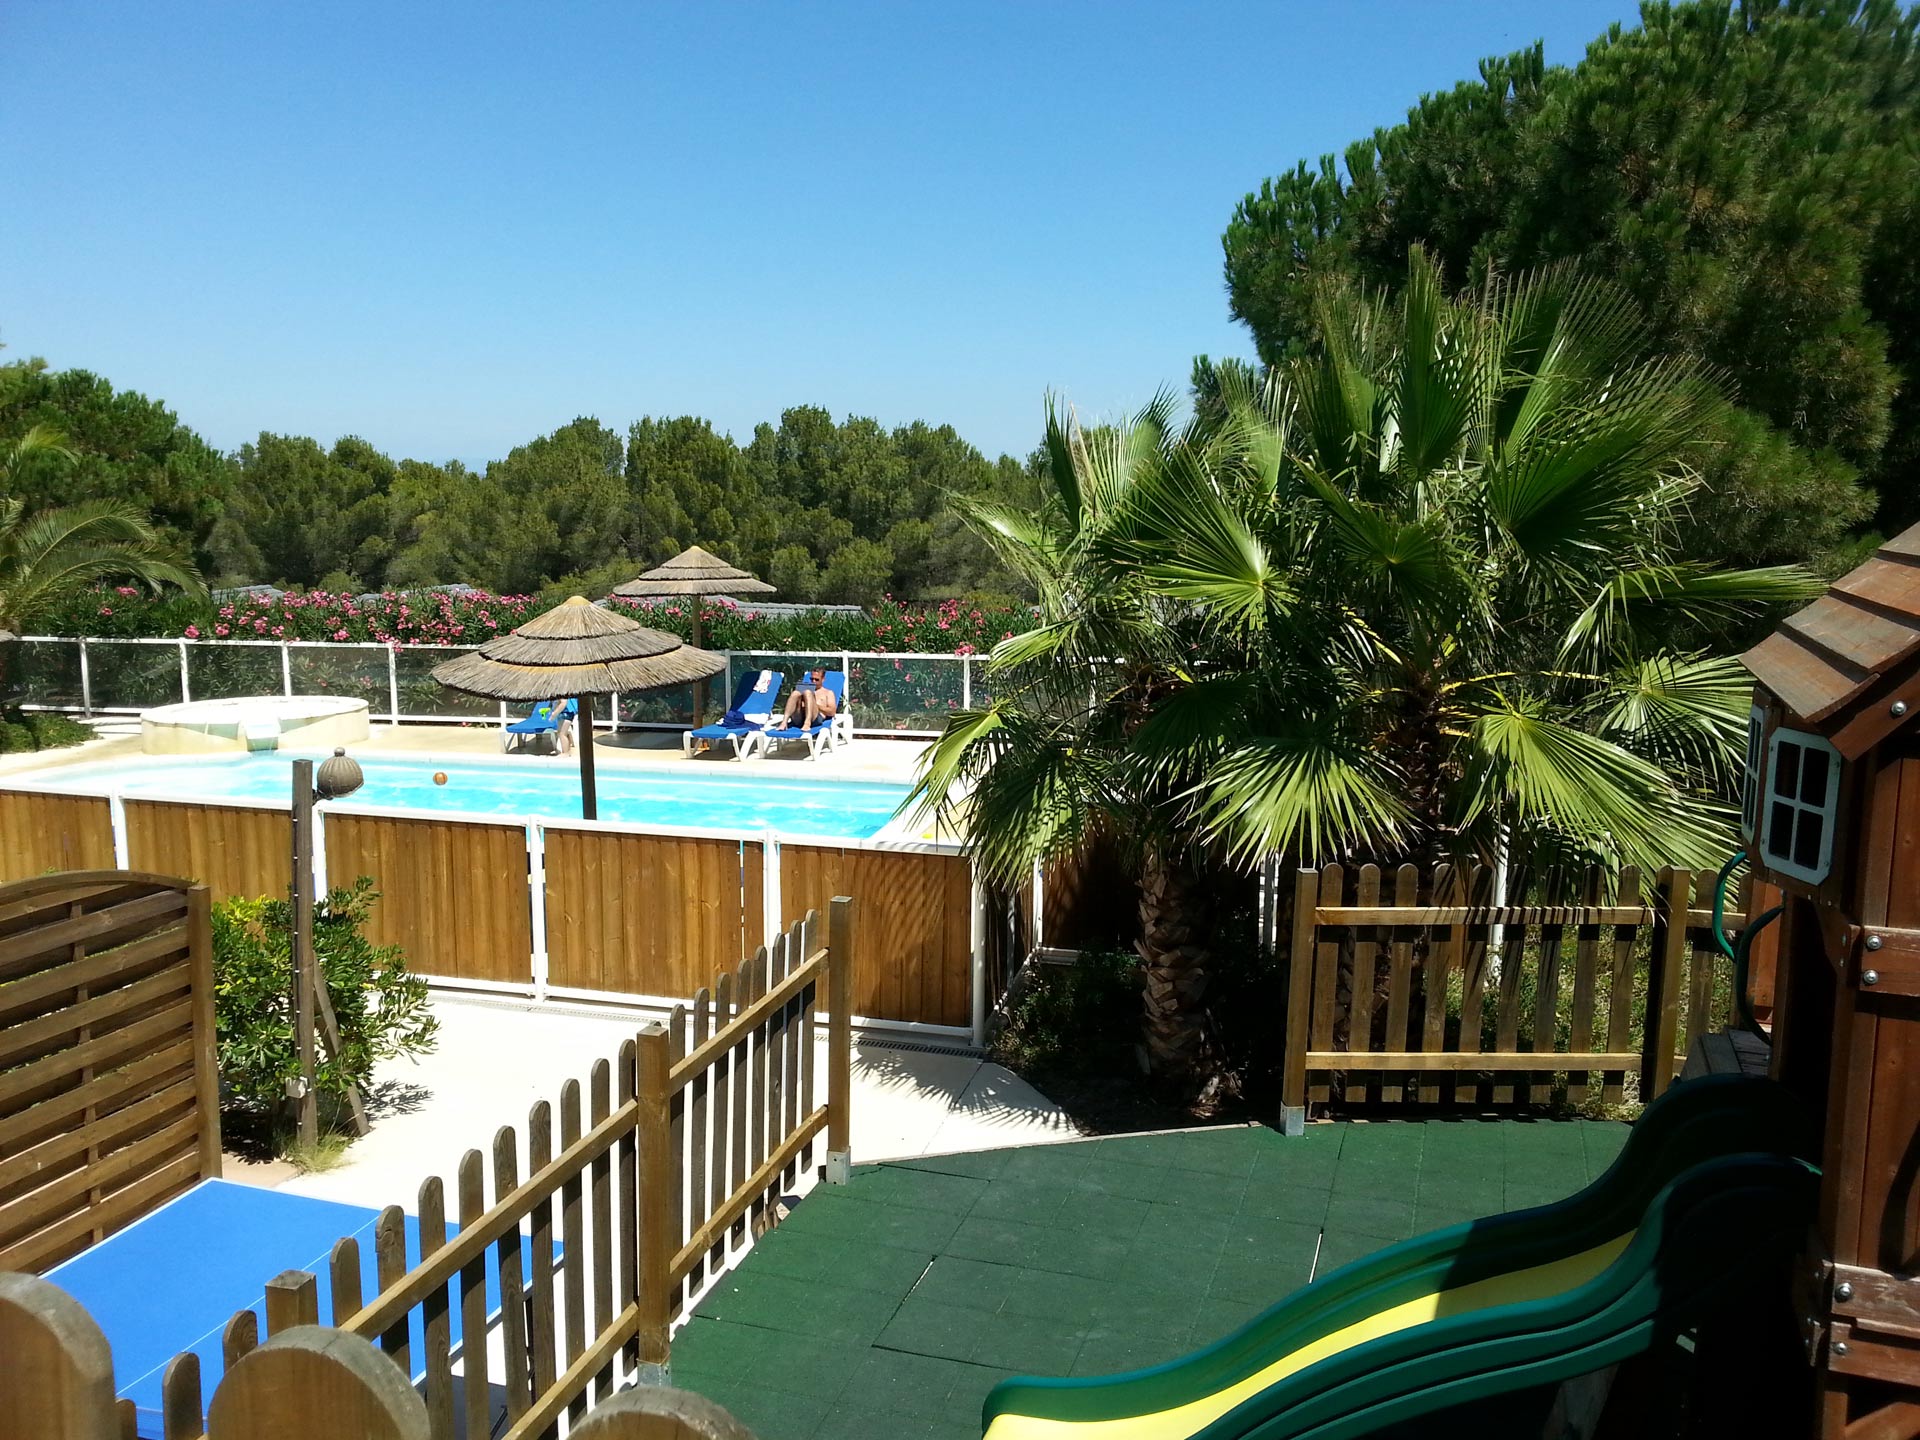 Aire de jeux sécurisée et vue sur la piscine chauffée du parc résidentiel de loisirs Les Hauts de Baldy au Cap d'Agde